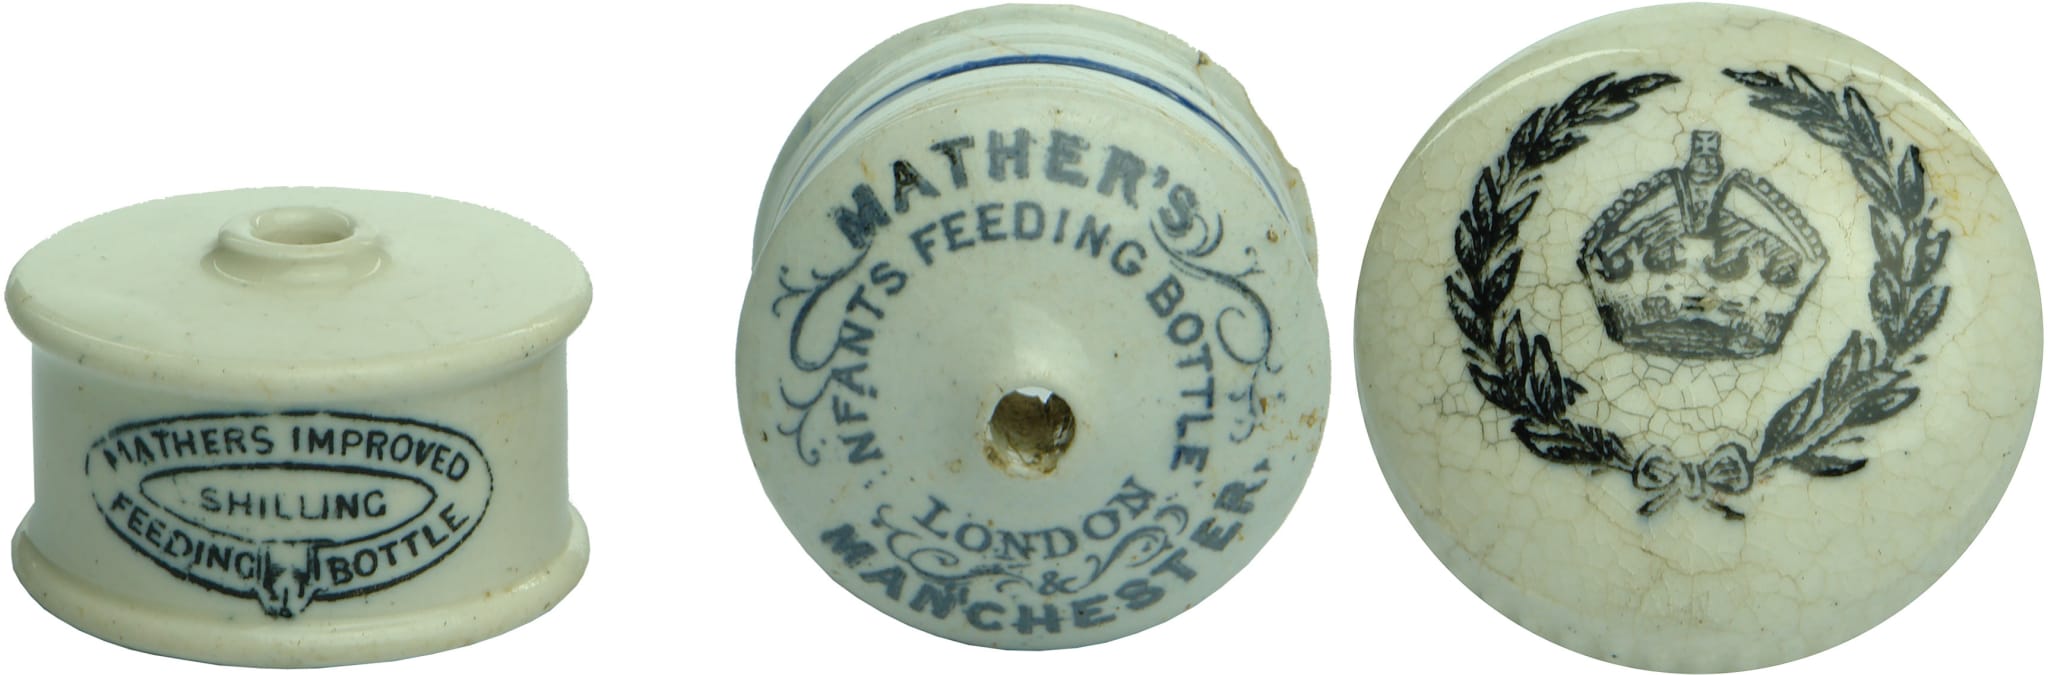 Antique Feeding Bottles Caps Ceramic